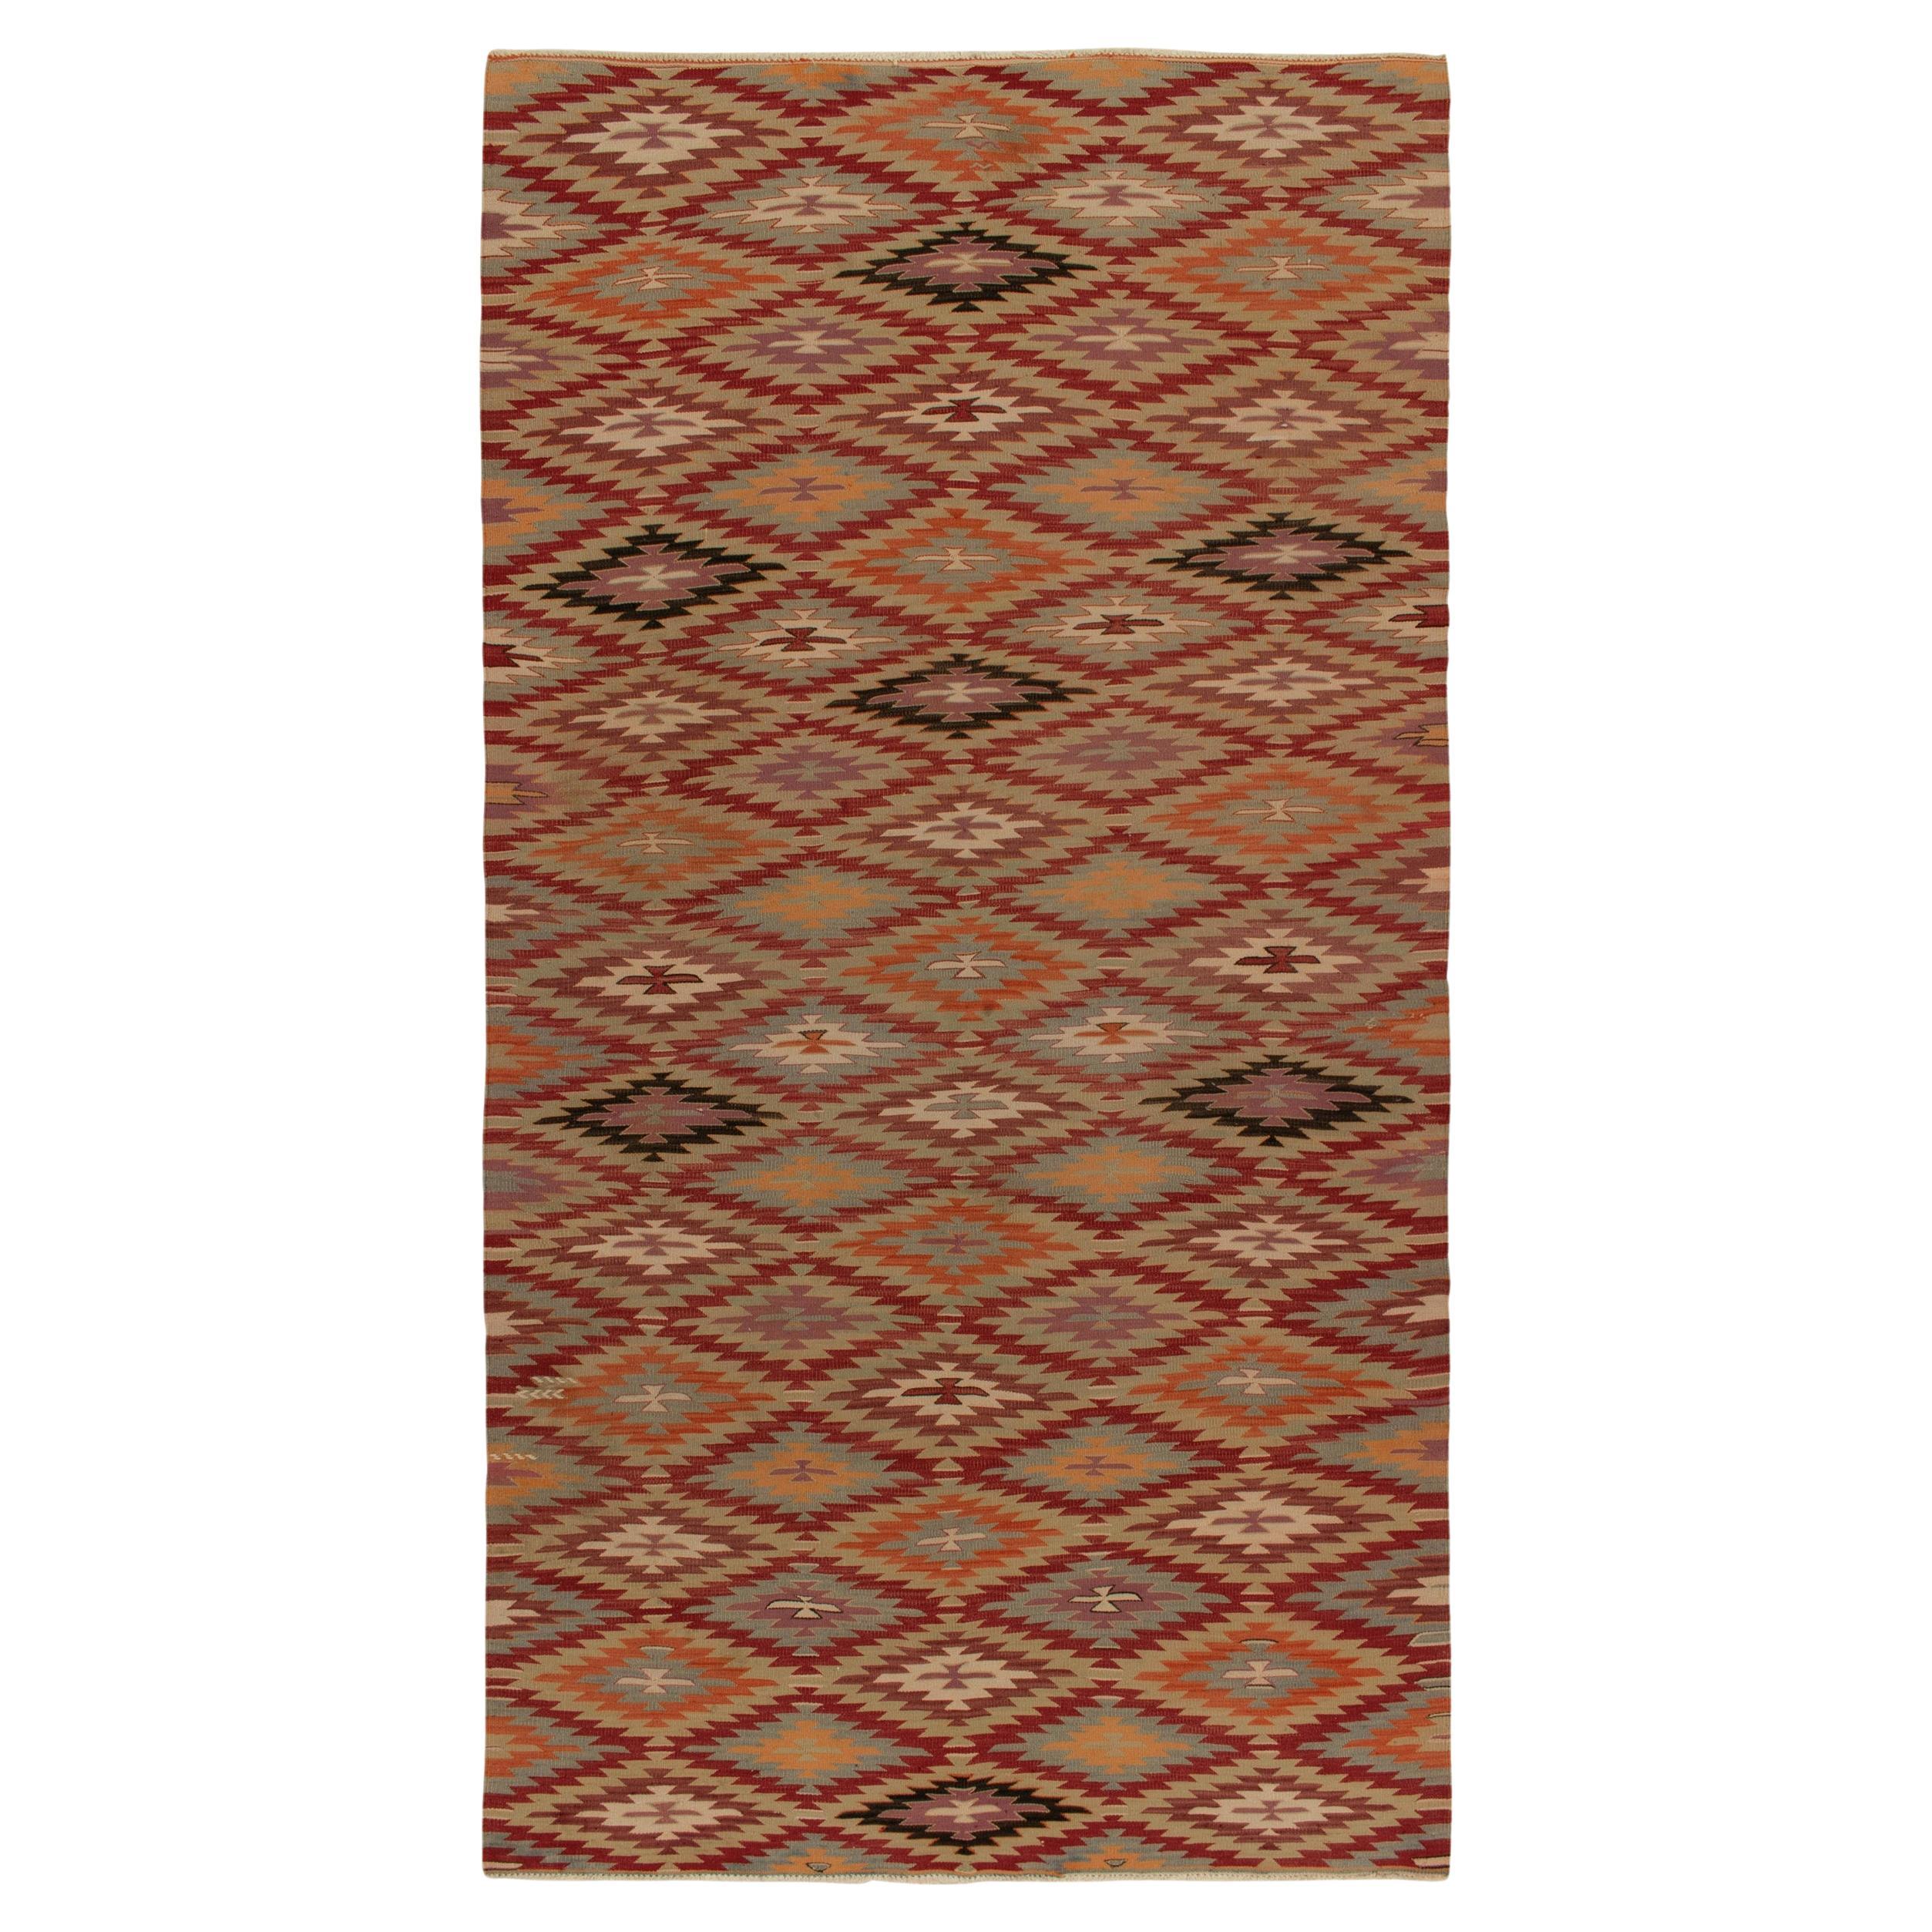 Stammeskunst-Kelim-Teppich in Rot, Orange und Blau mit geometrischen Mustern